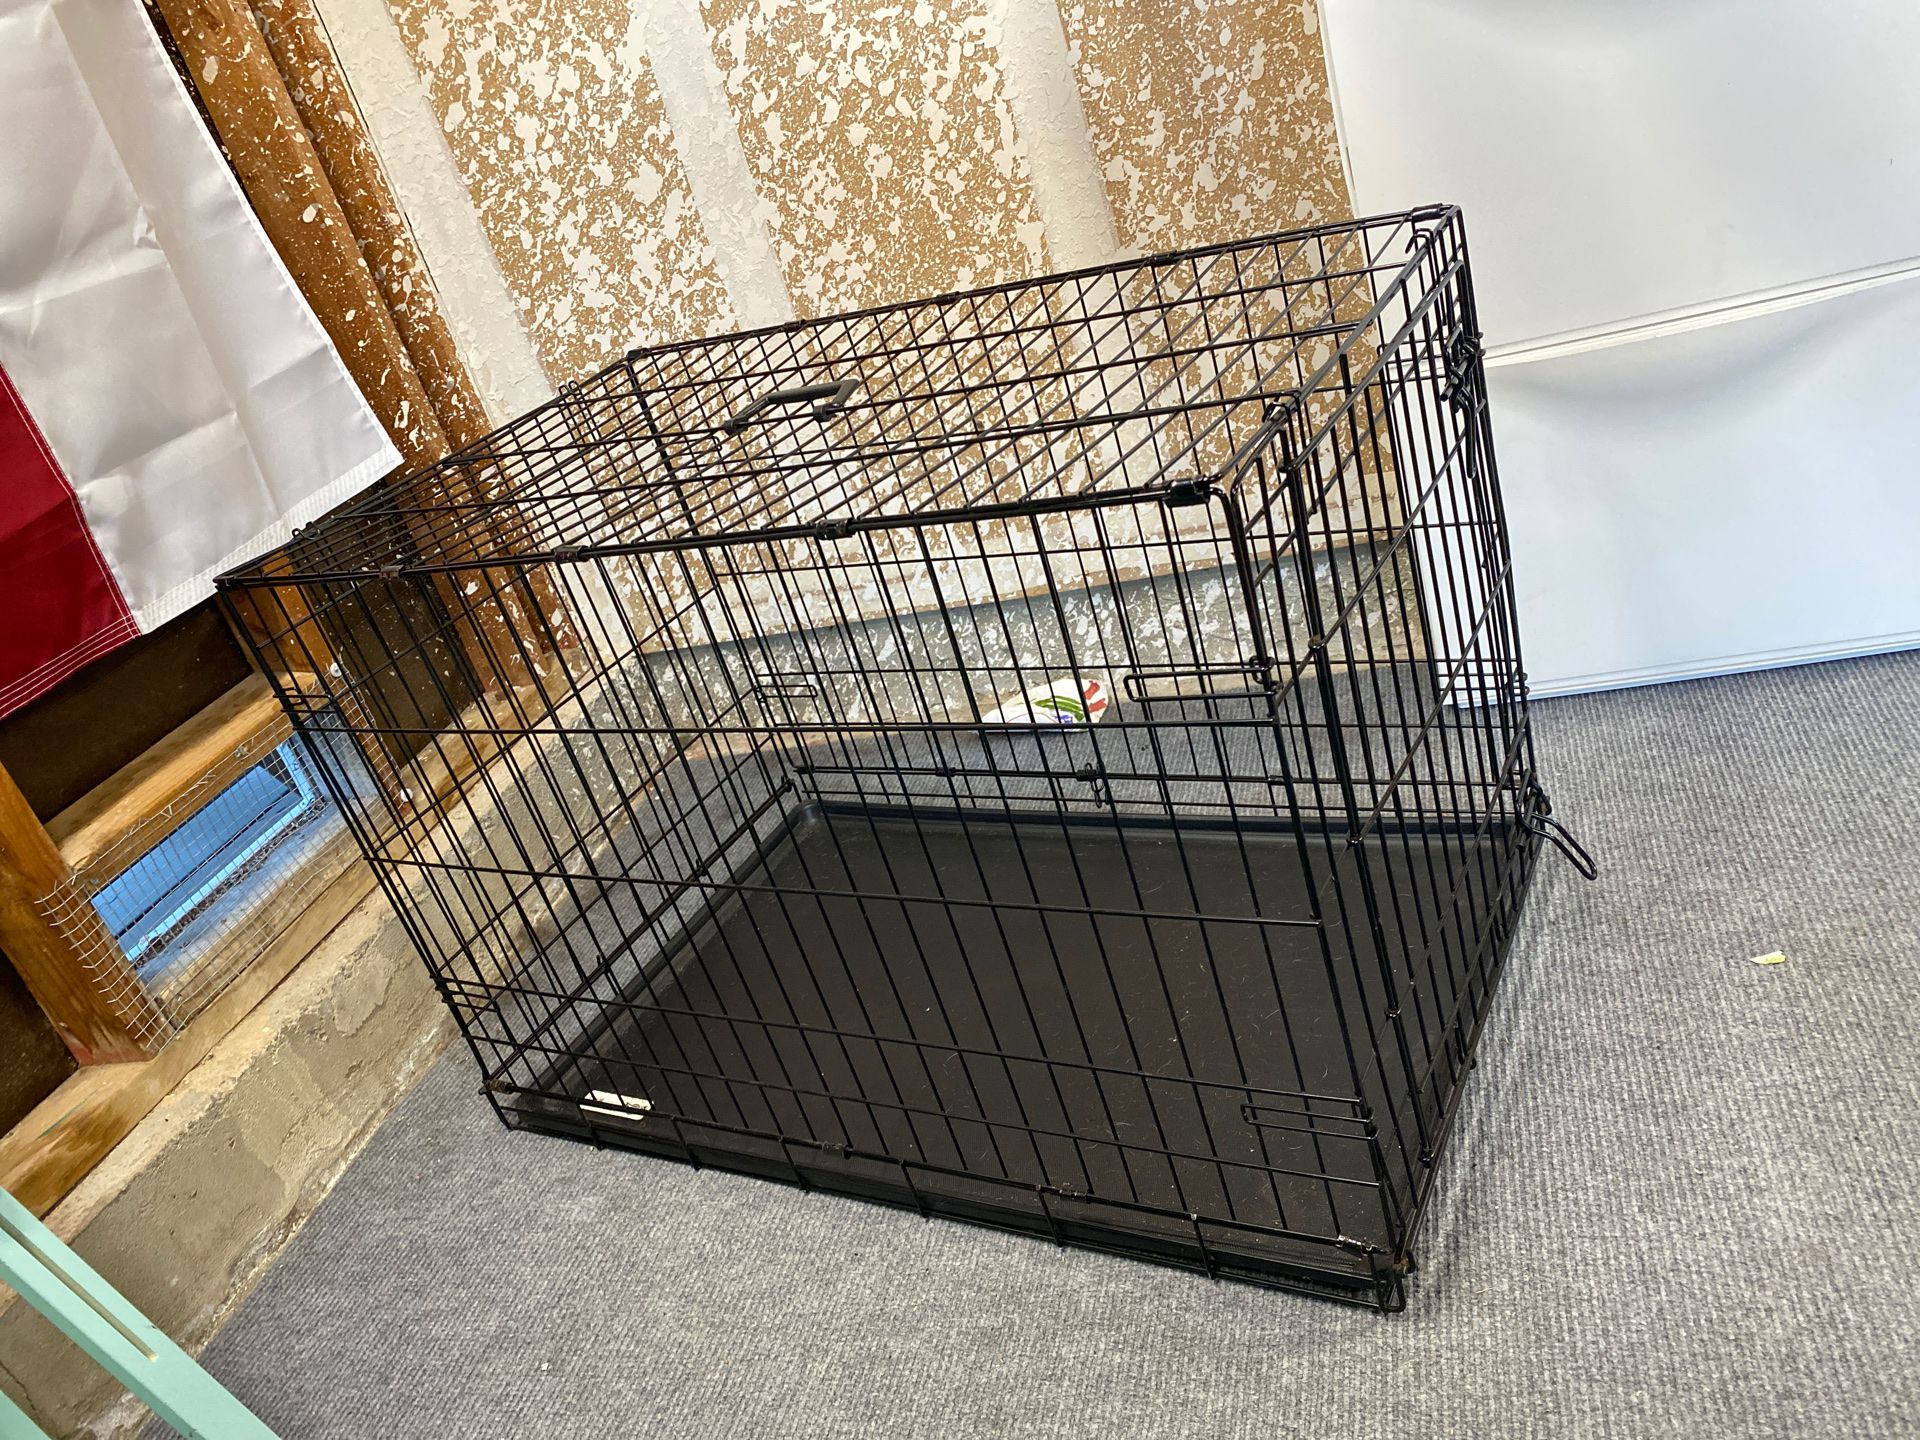 Large folding dog crate